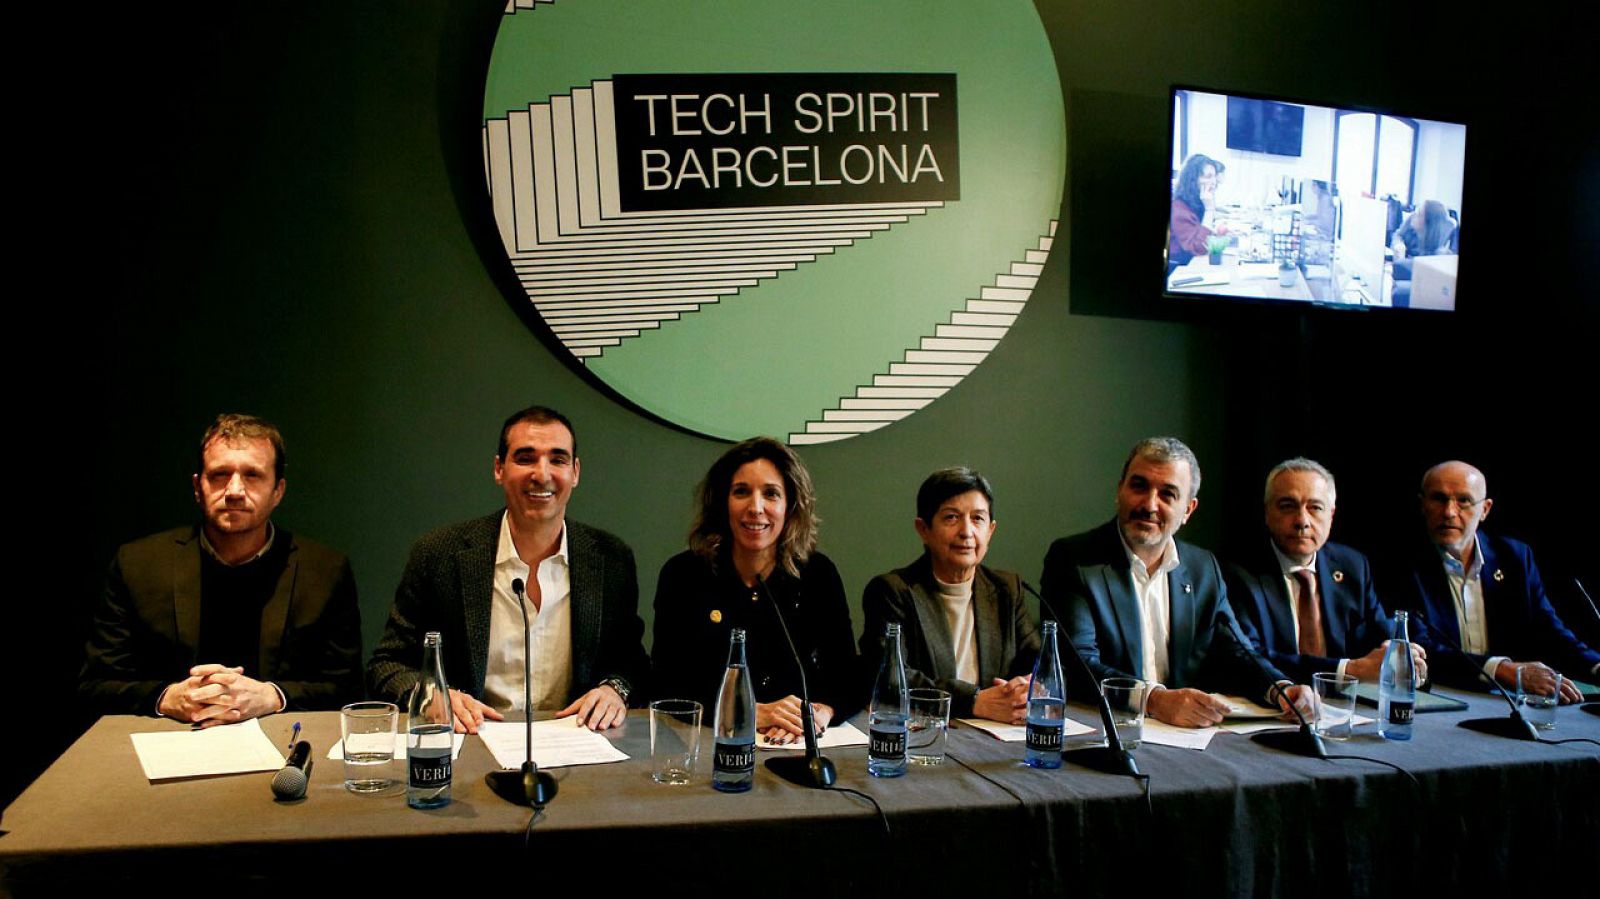  Los organizadores presentan el programa de actividades de las jornadas Tech Spirit Barcelona